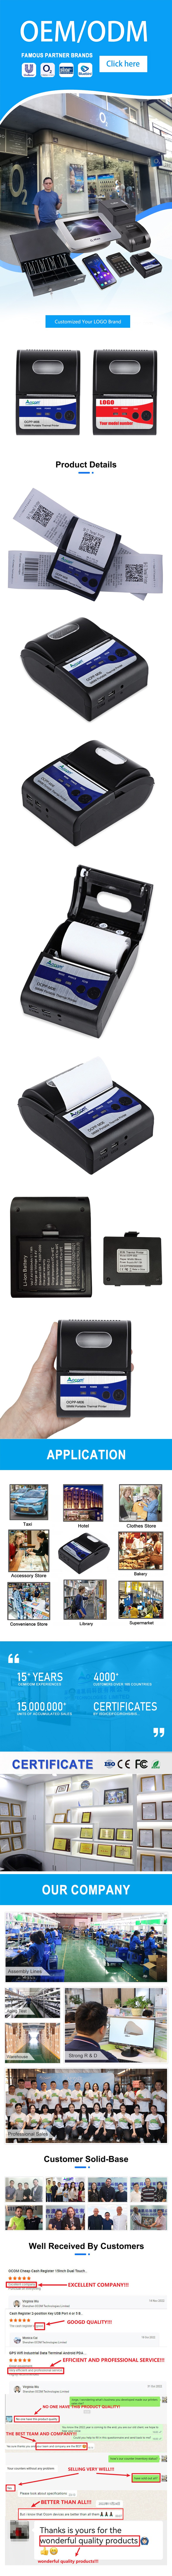 Mini Imprimante Bluetooth Portable Thermique 58 Mm Avec 1 Papier  D'Impression Pour Téléphone Mobile Android Ios Rouge MK12 - Imprimante  Photo